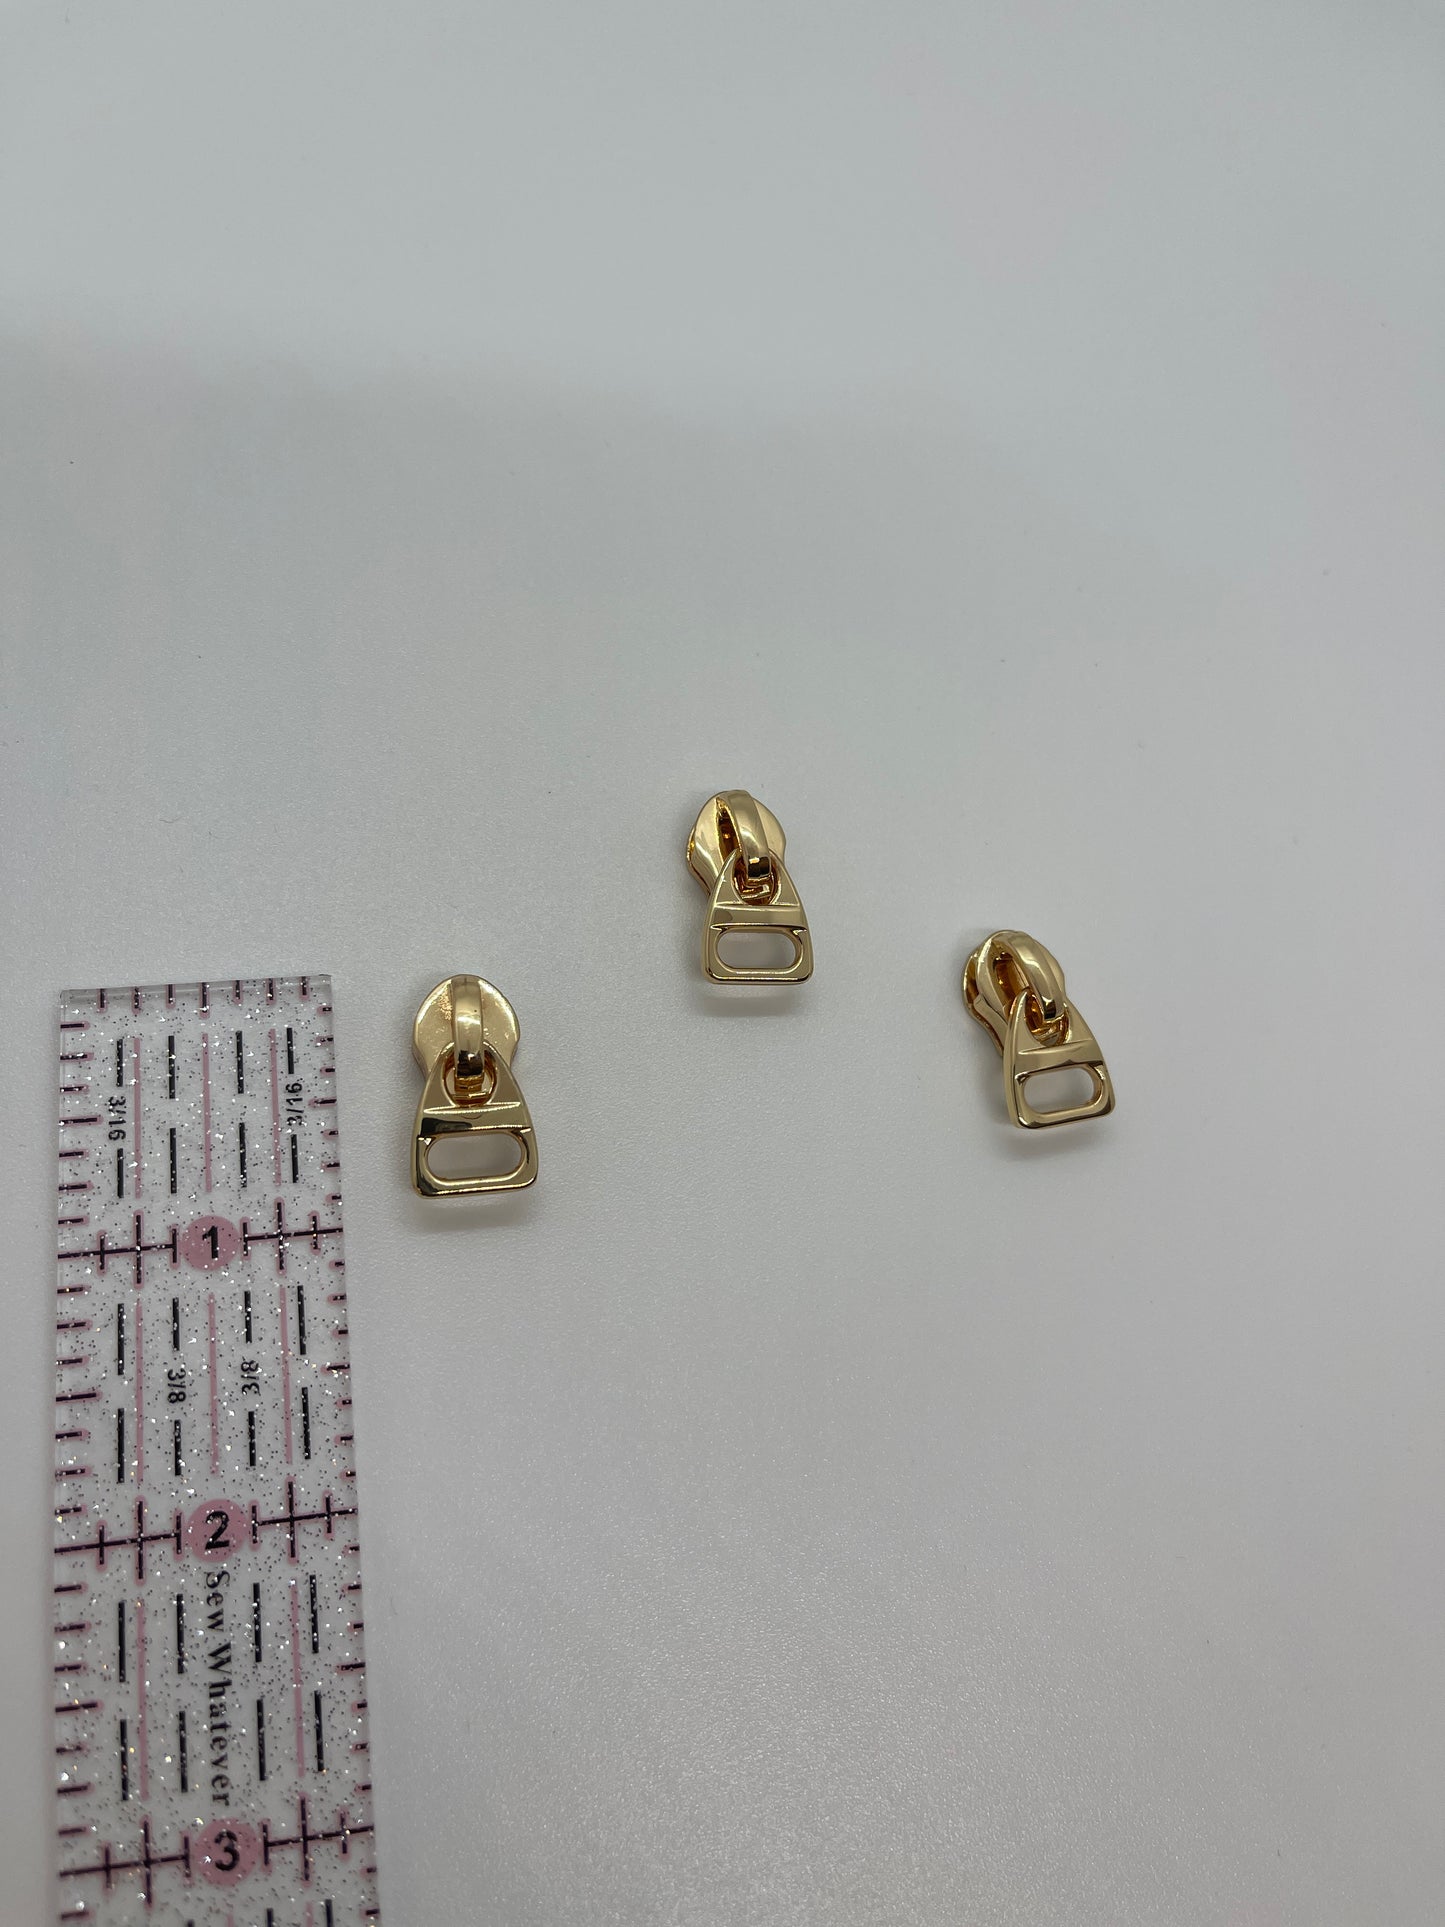 Squared Gold Zipper Pull #5 - 1/2 Inch